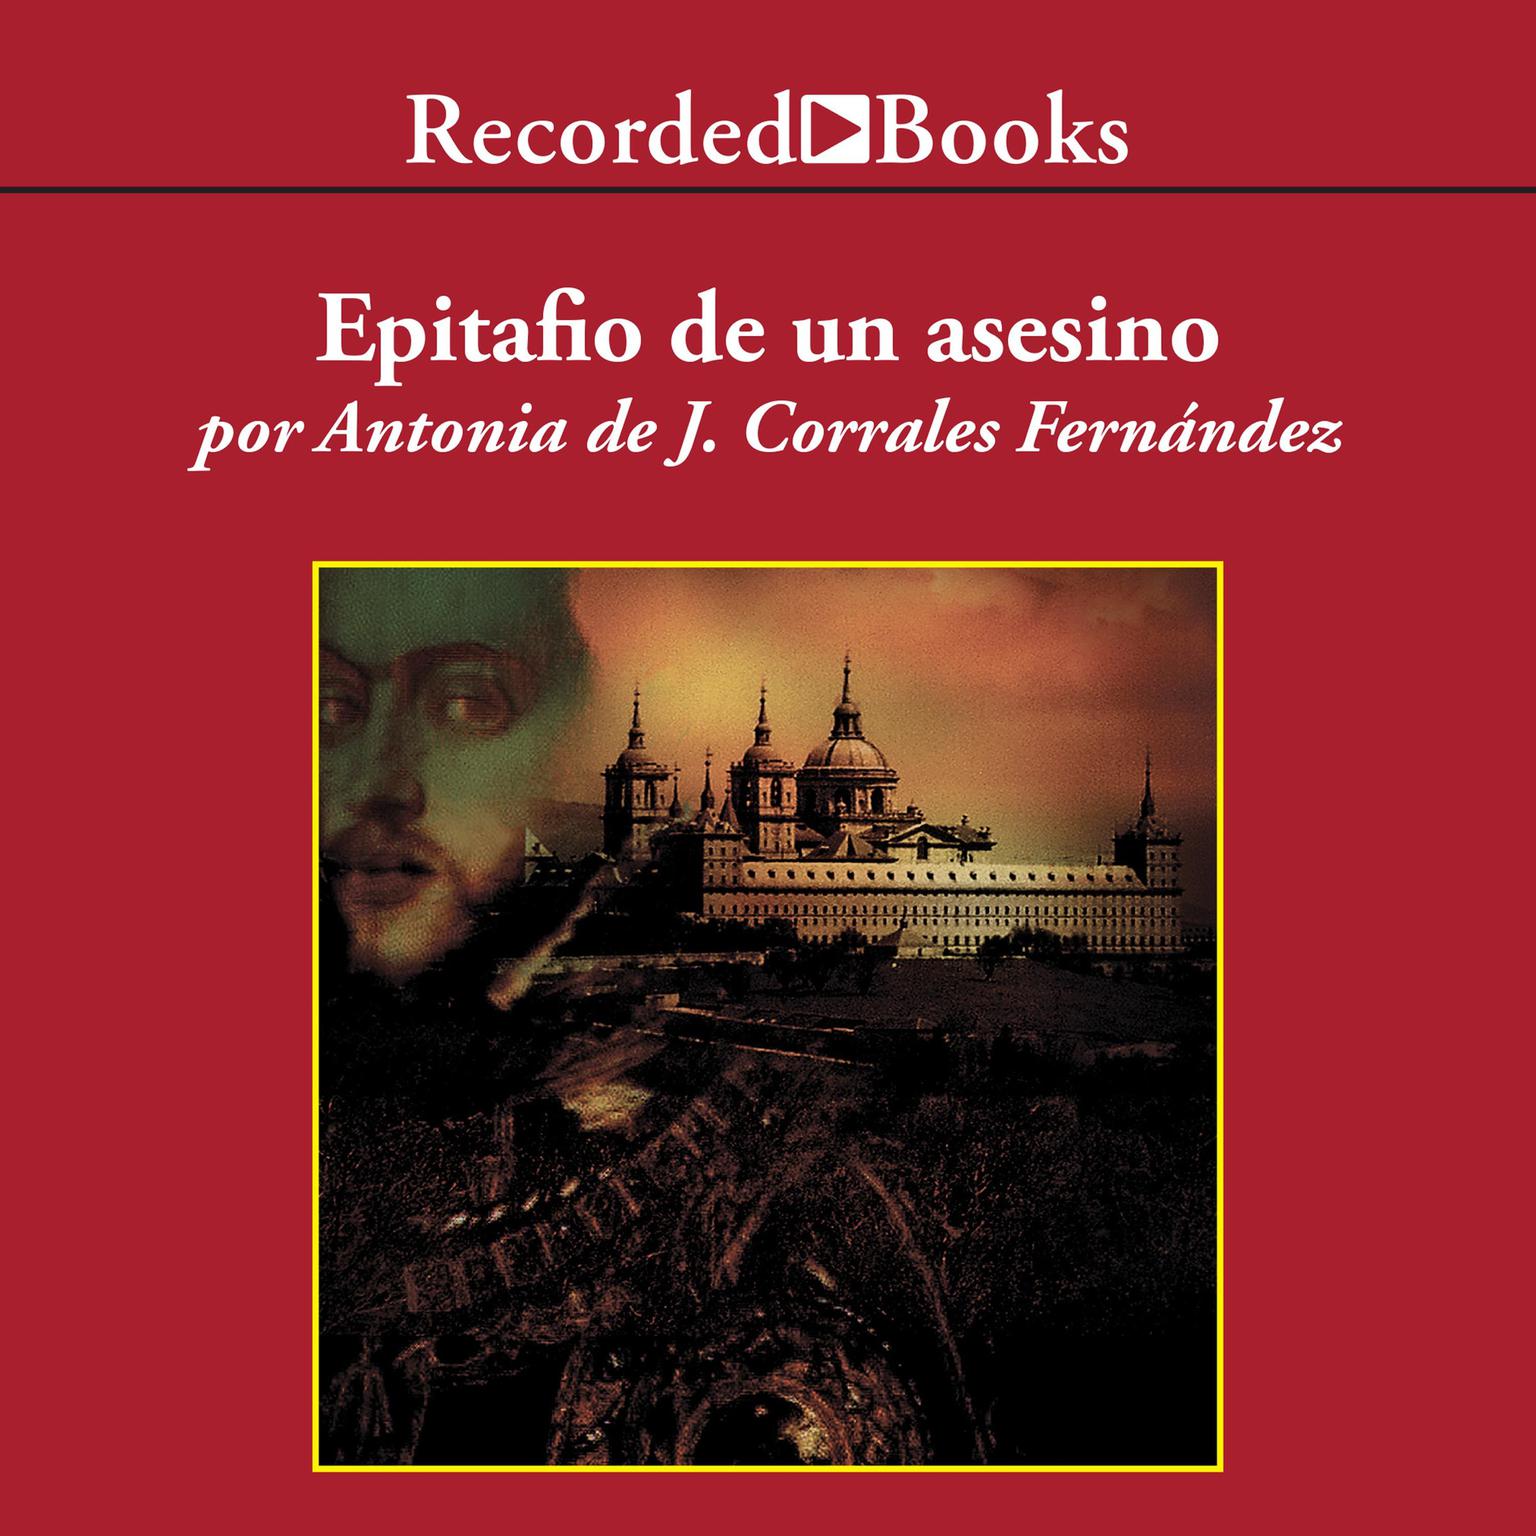 Epitafio de un asesino (Epitaph of a Murderer) Audiobook, by Antonia Corrales